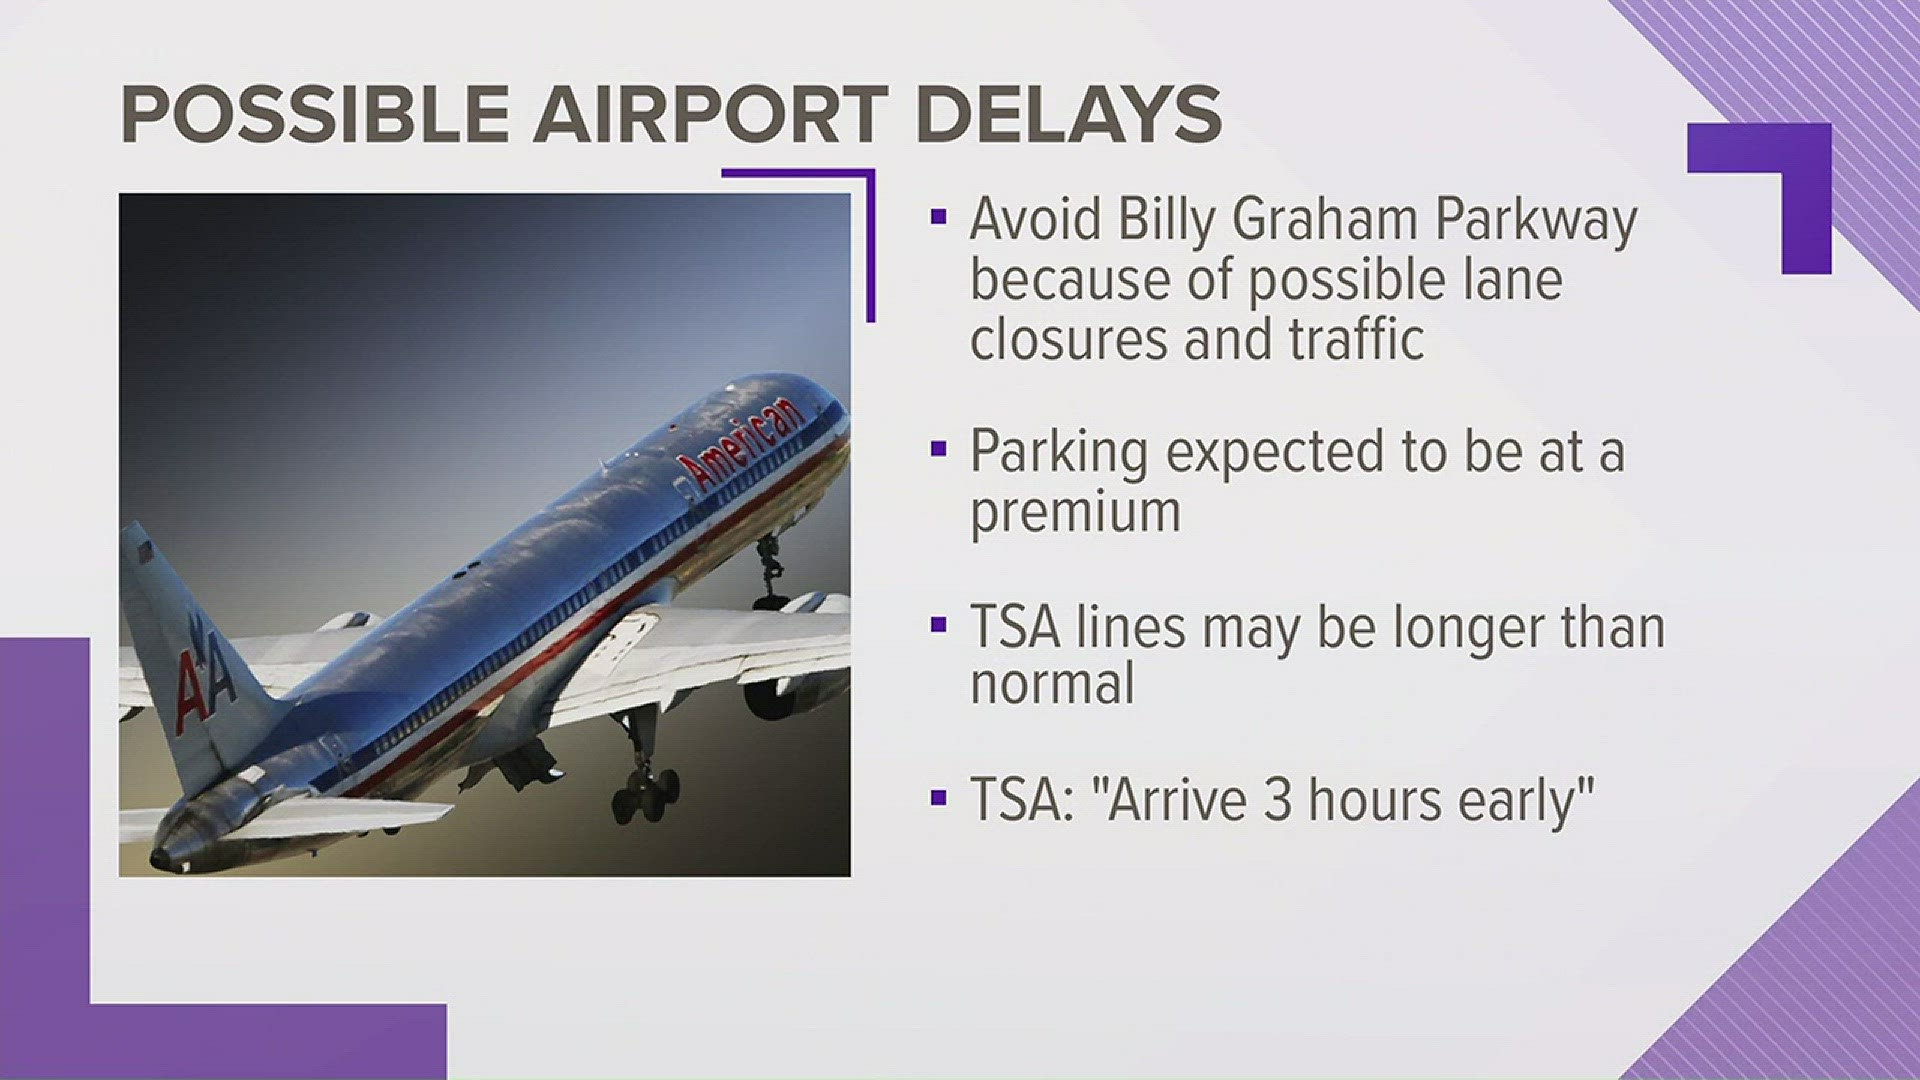 TSA advises passengers to arrive 3 hours early